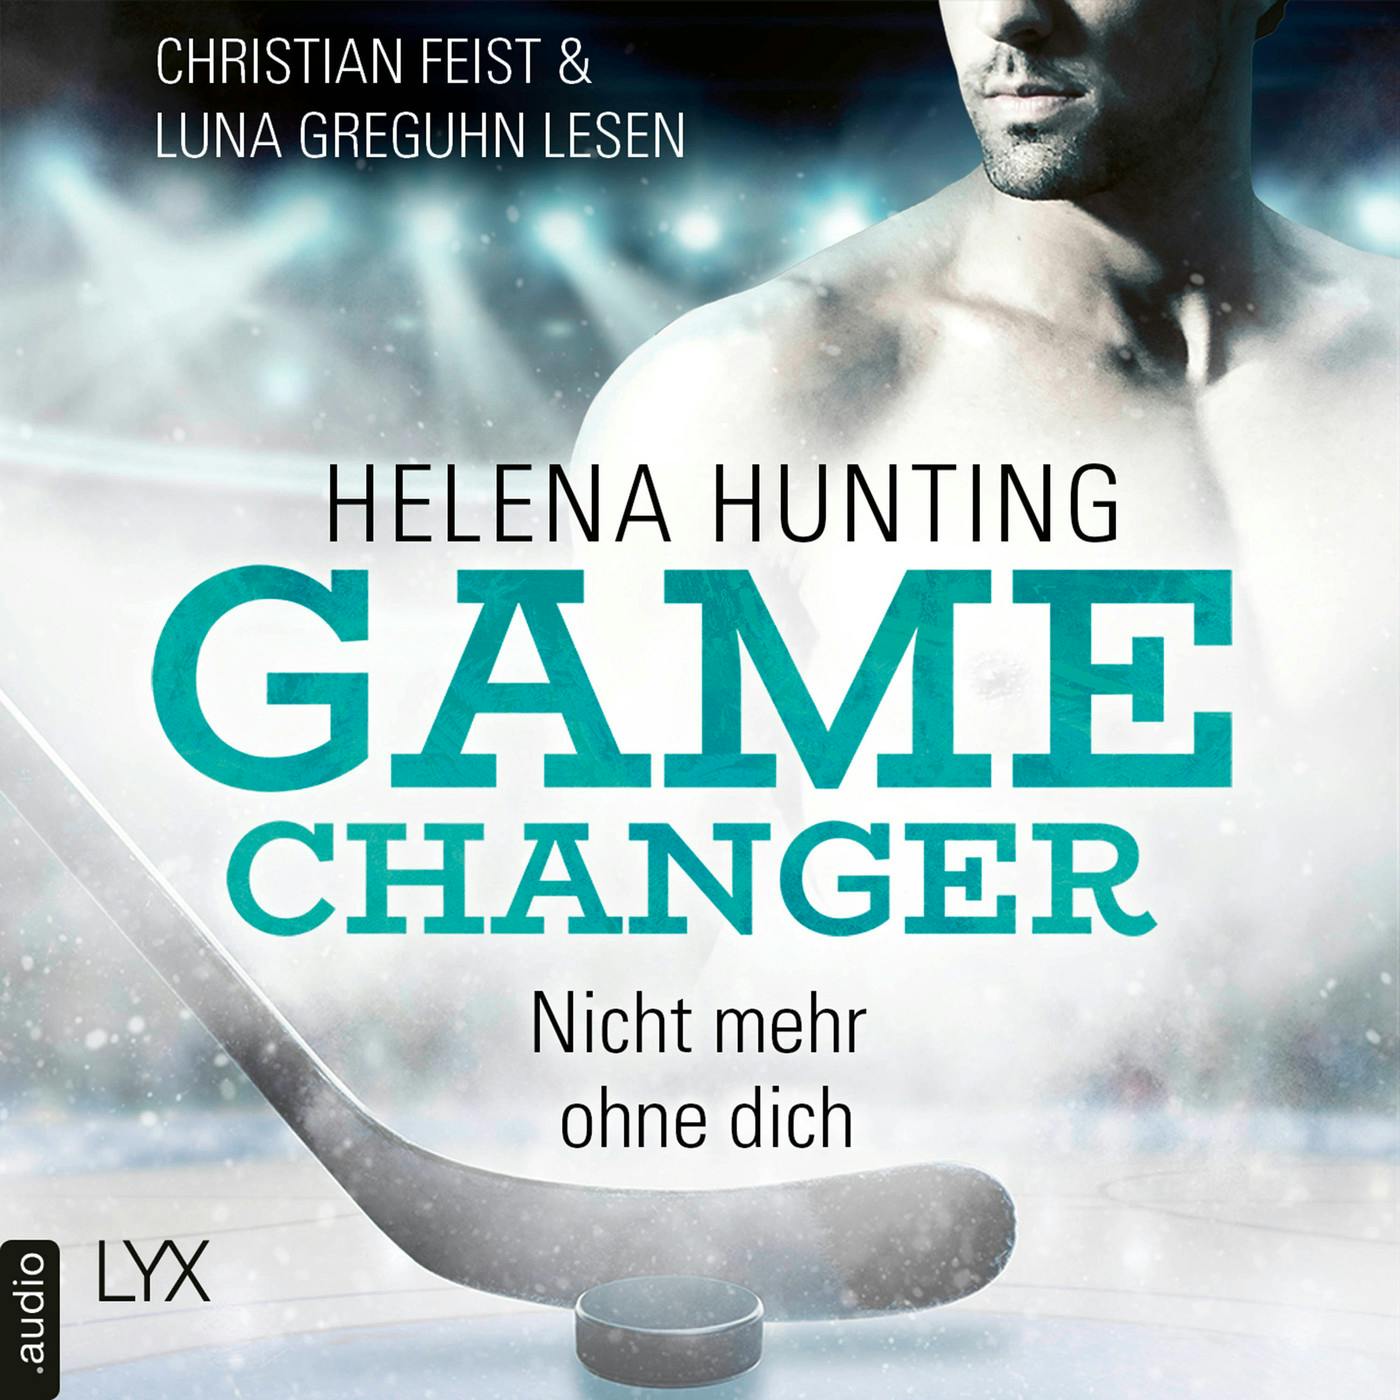 Nicht mehr ohne dich - Game Changer, Teil 1 (Ungekürzt) - Helena Hunting